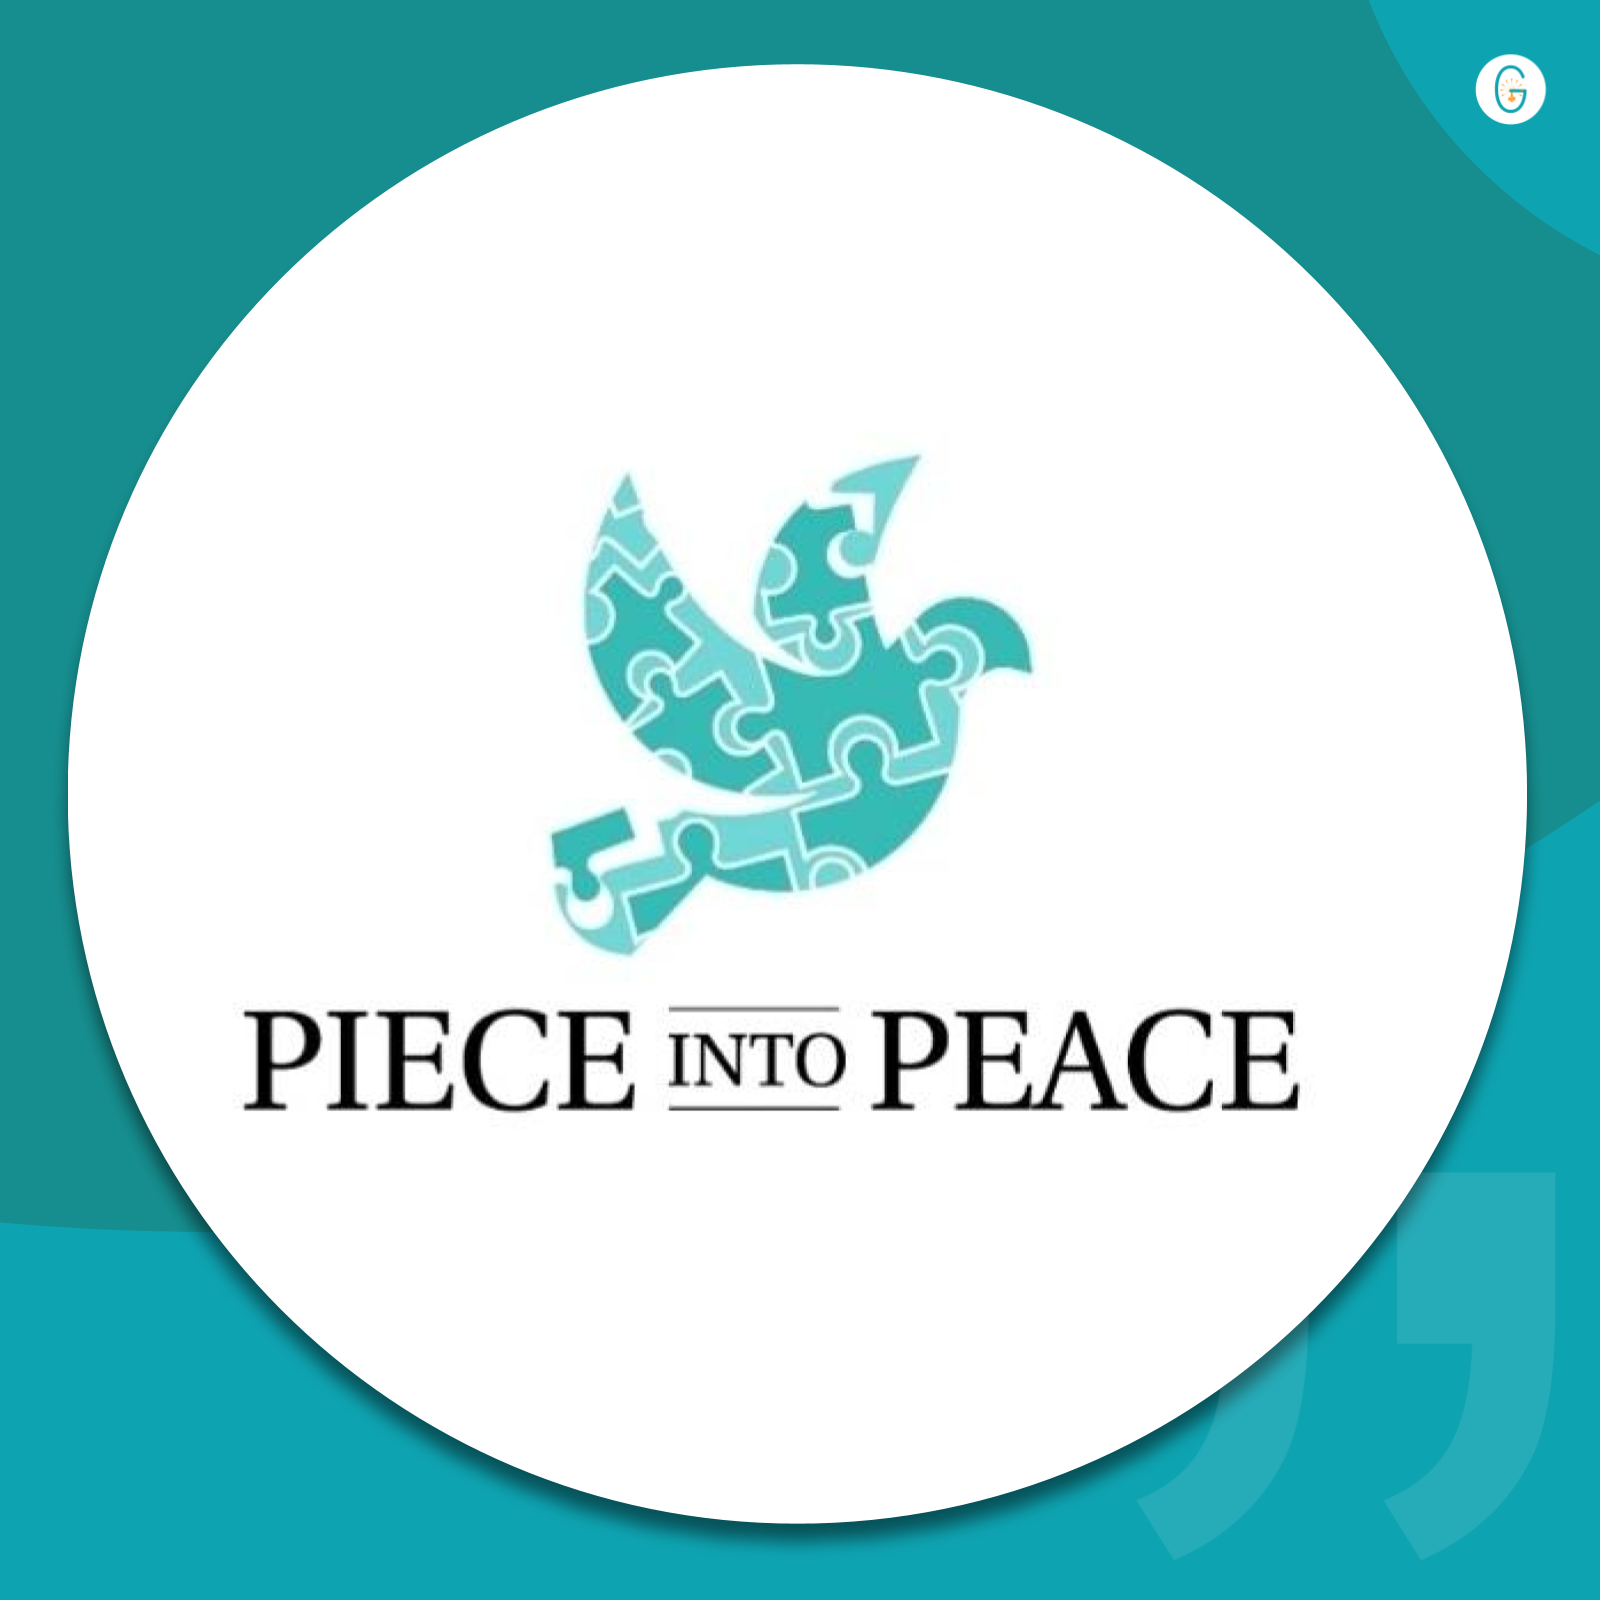 Piece into Peace